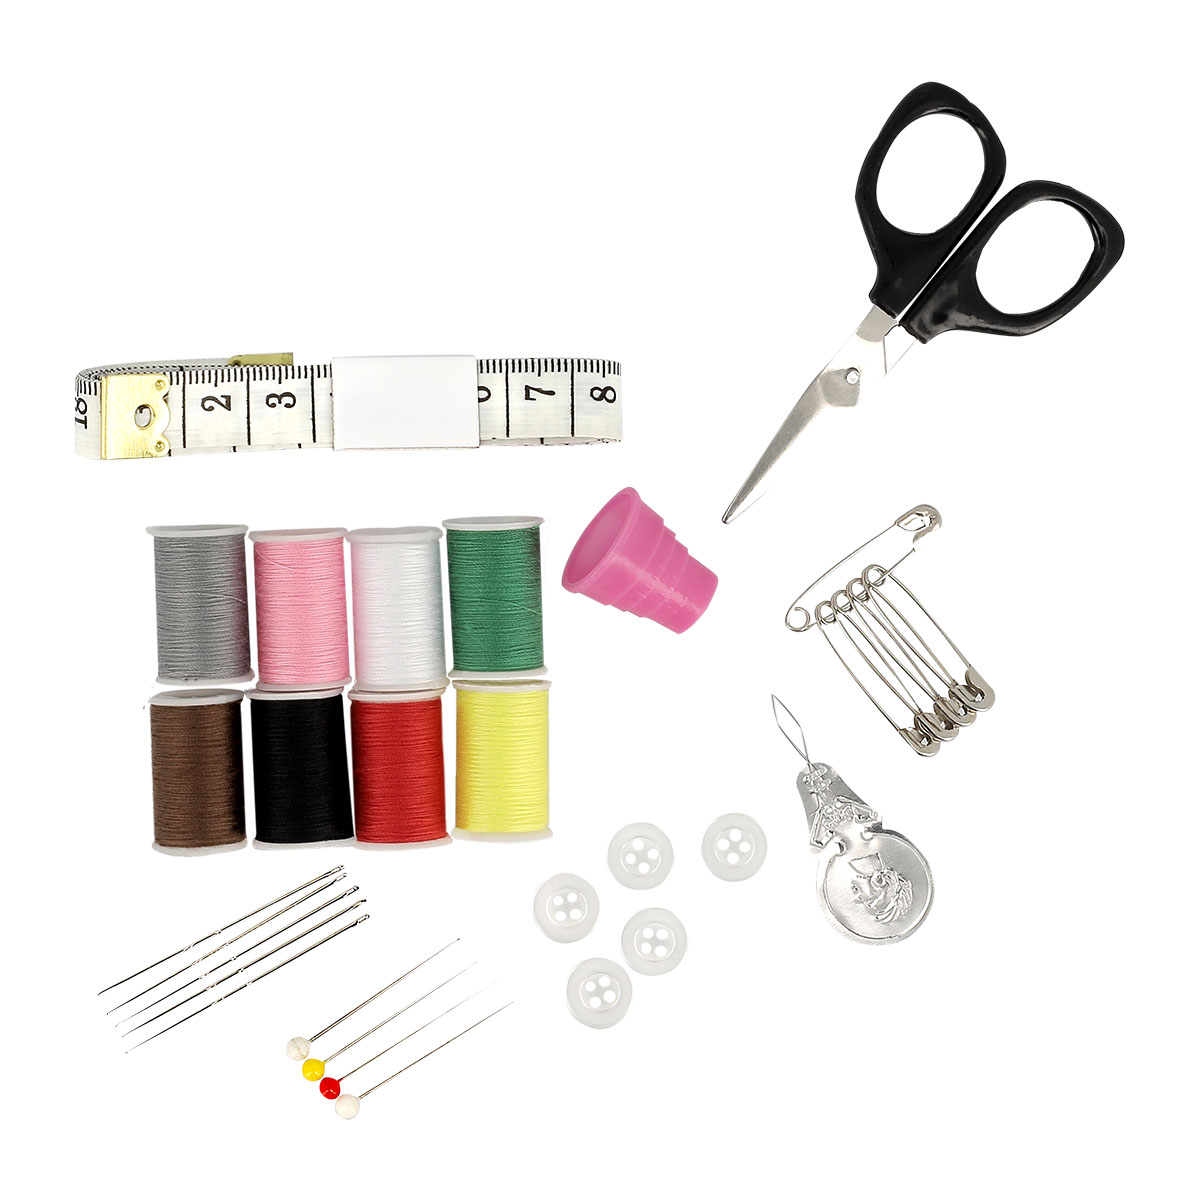 Kit de couture complet avec fil, aiguilles, ciseaux, boutons